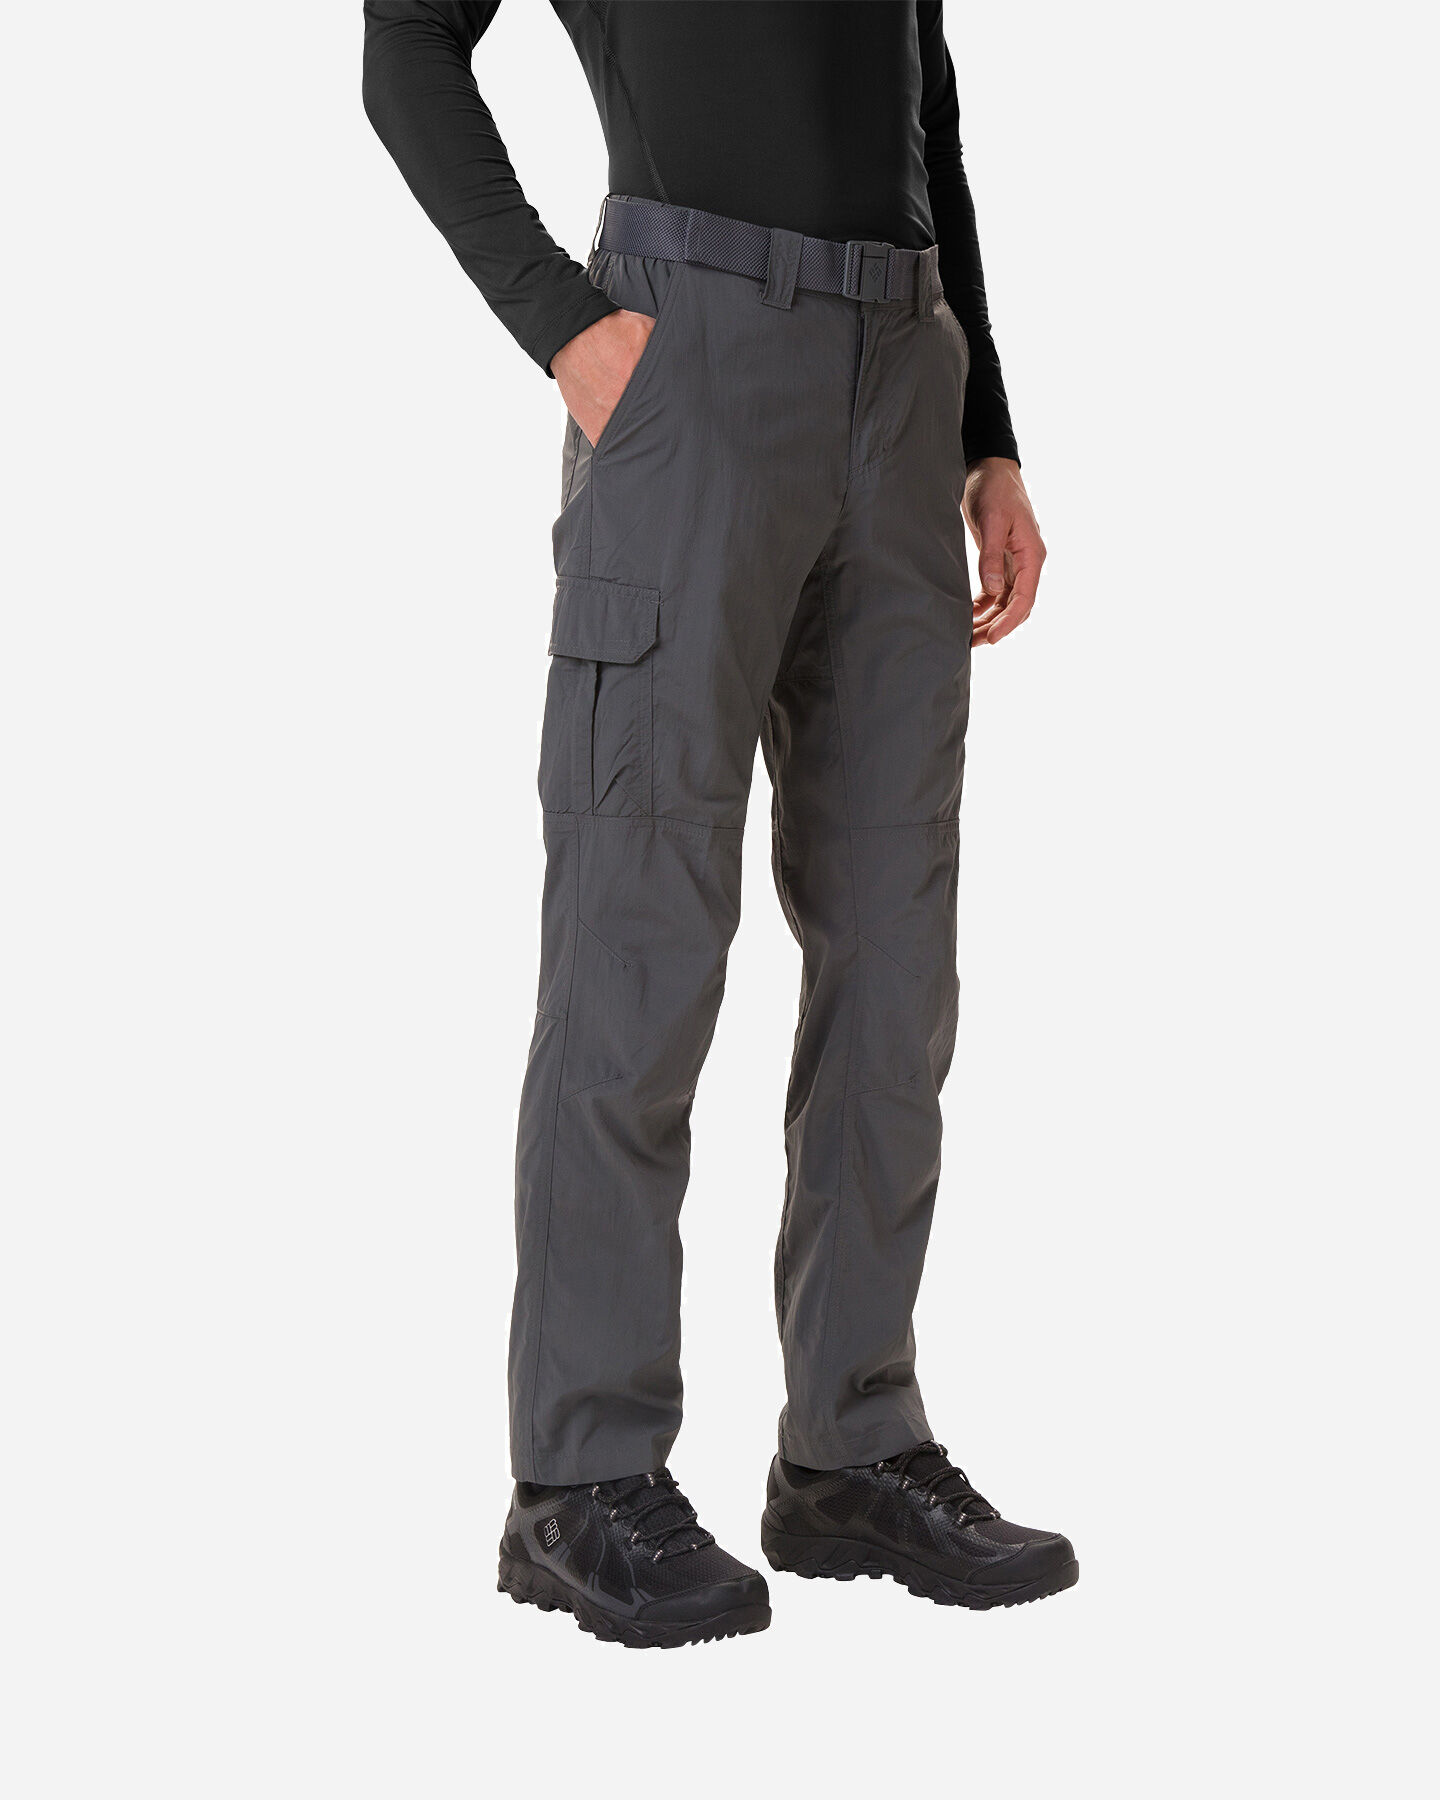  Pantalone outdoor COLUMBIA SILVER RIDGE M S5063121|028|3832 scatto 0